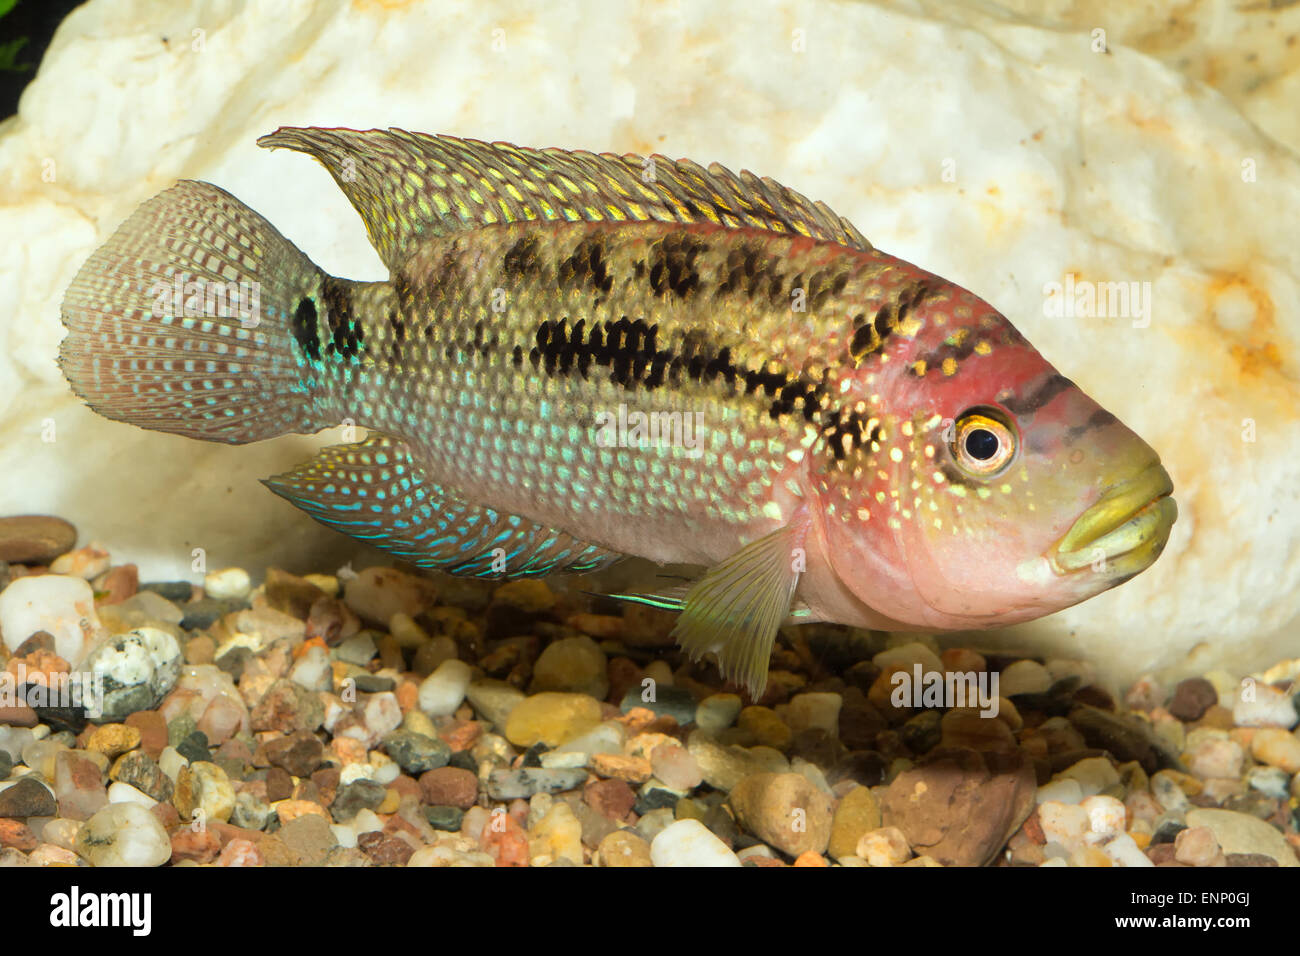 Aquarium cichlid fish from the genus Rocio. Stock Photo